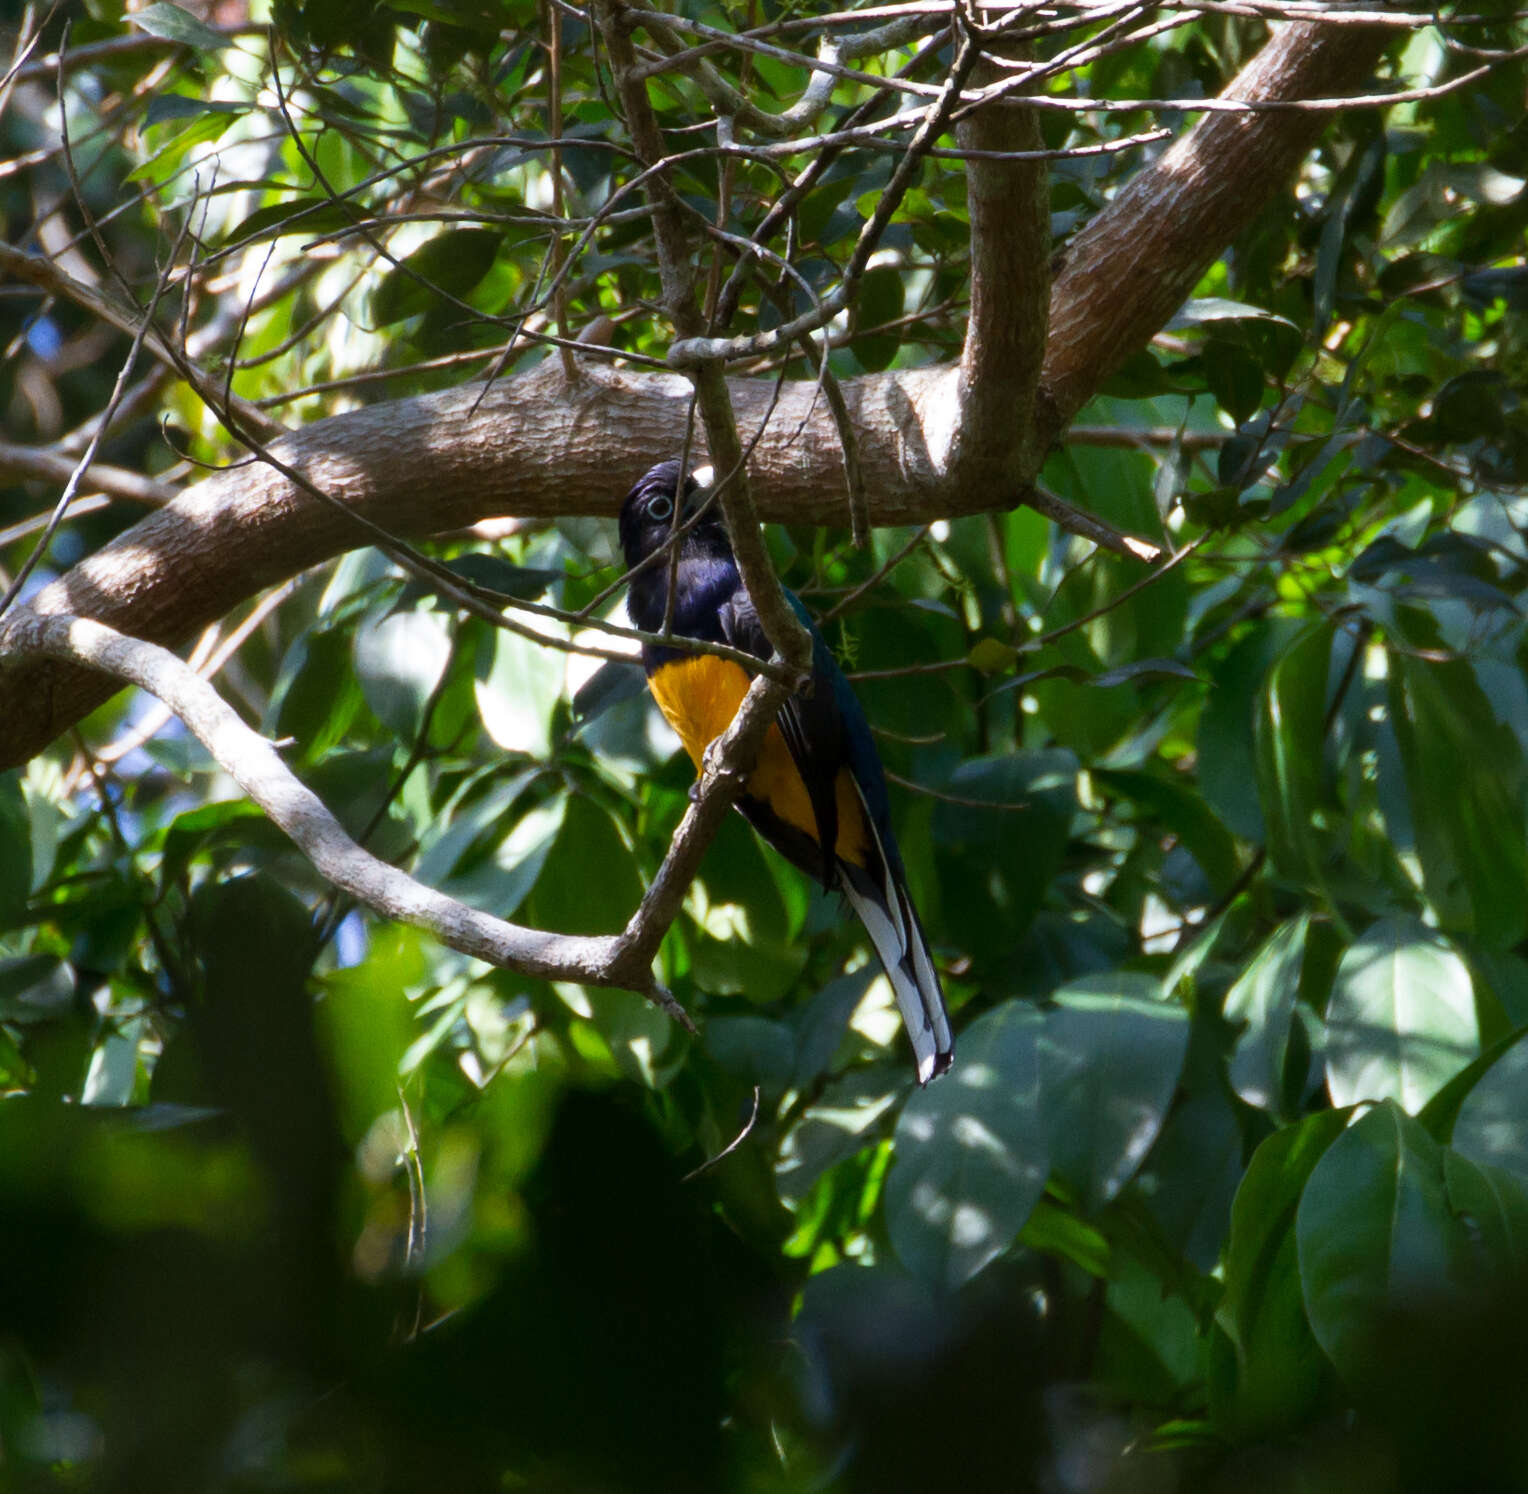 Image of Amazonian White-tailed Trogon